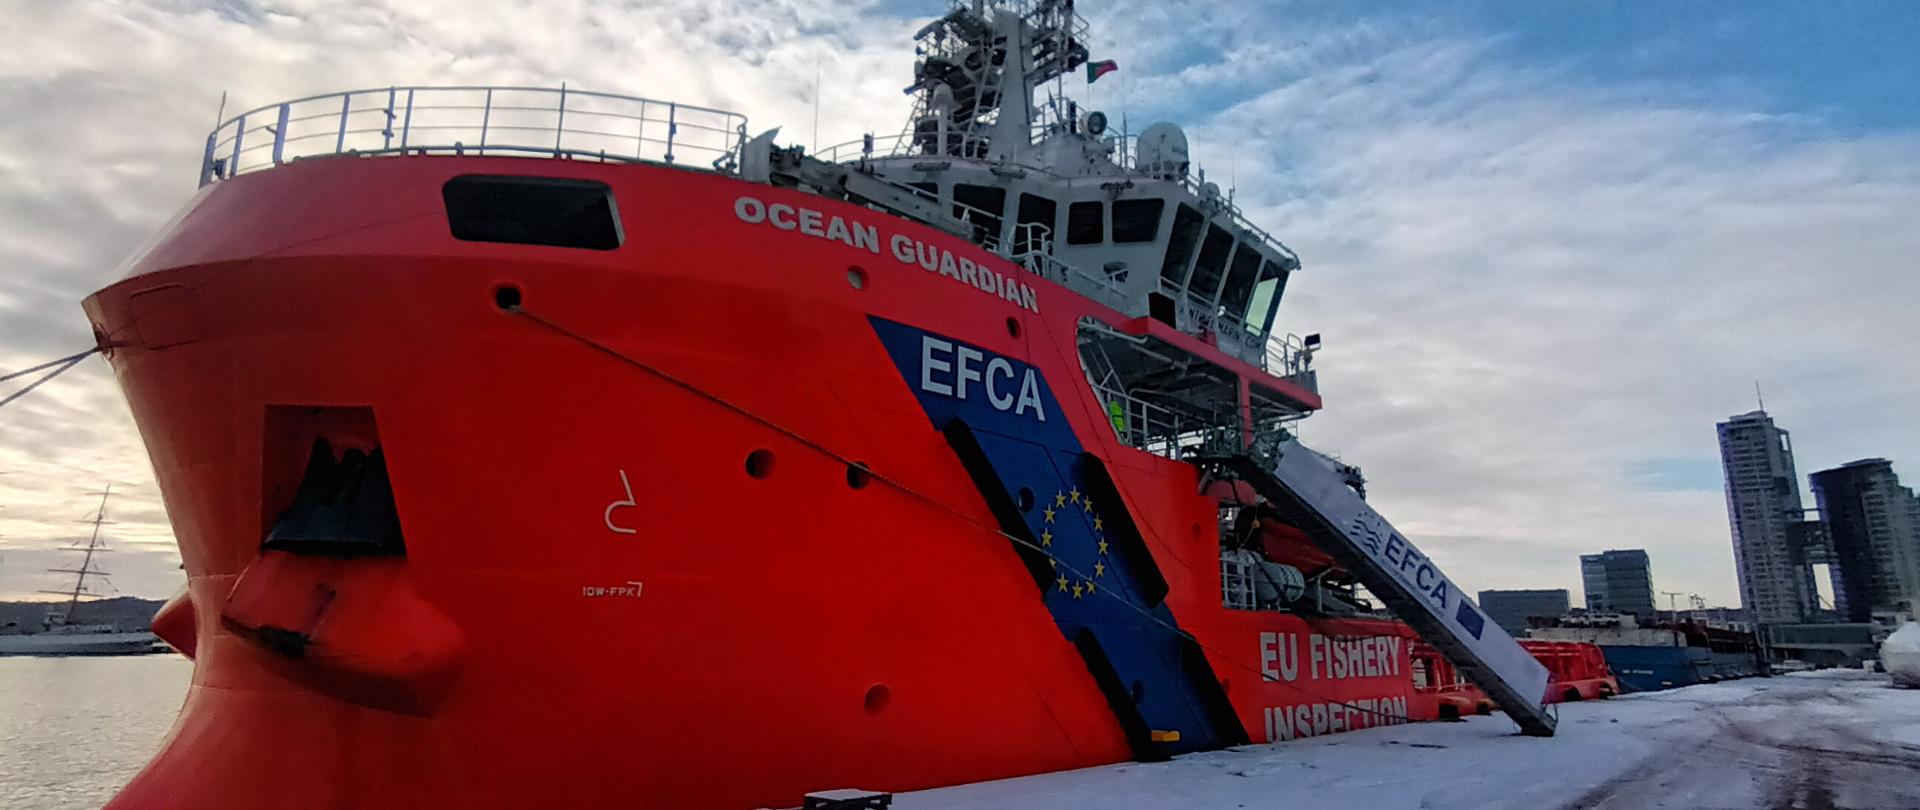 Pomarańczowy statek kontrolny Ocean Guardian Europejskiej Agencji Kontroli Rybołówstwa , logo Agencji widoczne na burcie, zacumowany w porcie Gdynia